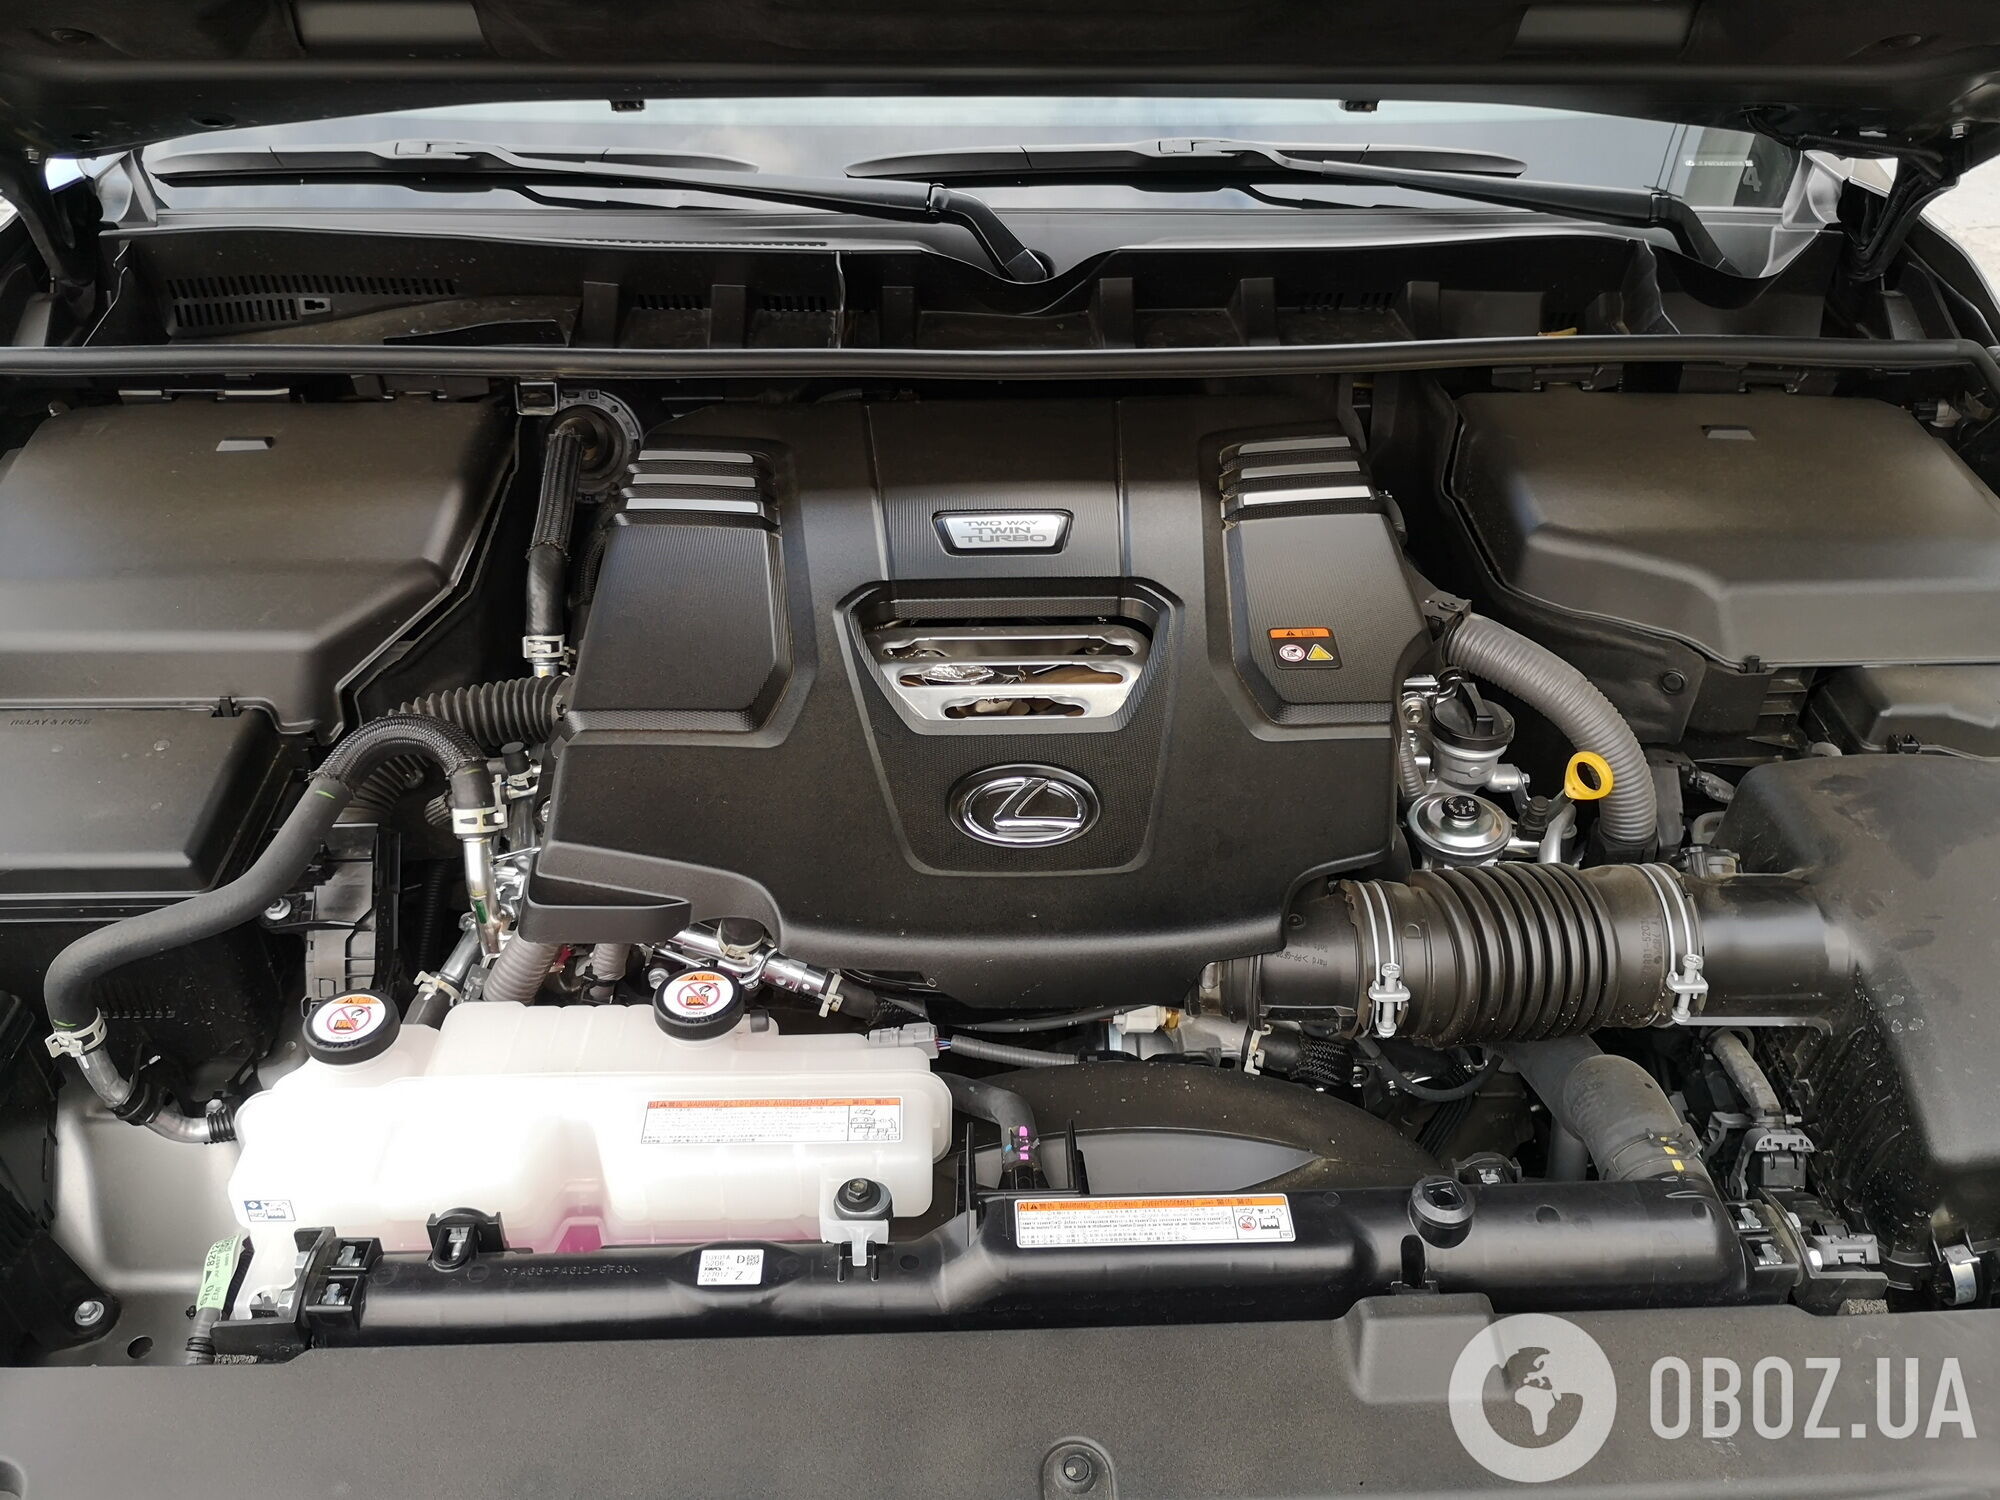 Lexus LX 500d оснащен дизелем объемом 3,3 л, который выдает 300 л.с. и 700 Нм против 272 л.с. и 650 Нм у прежнего 4,5-литрового V8